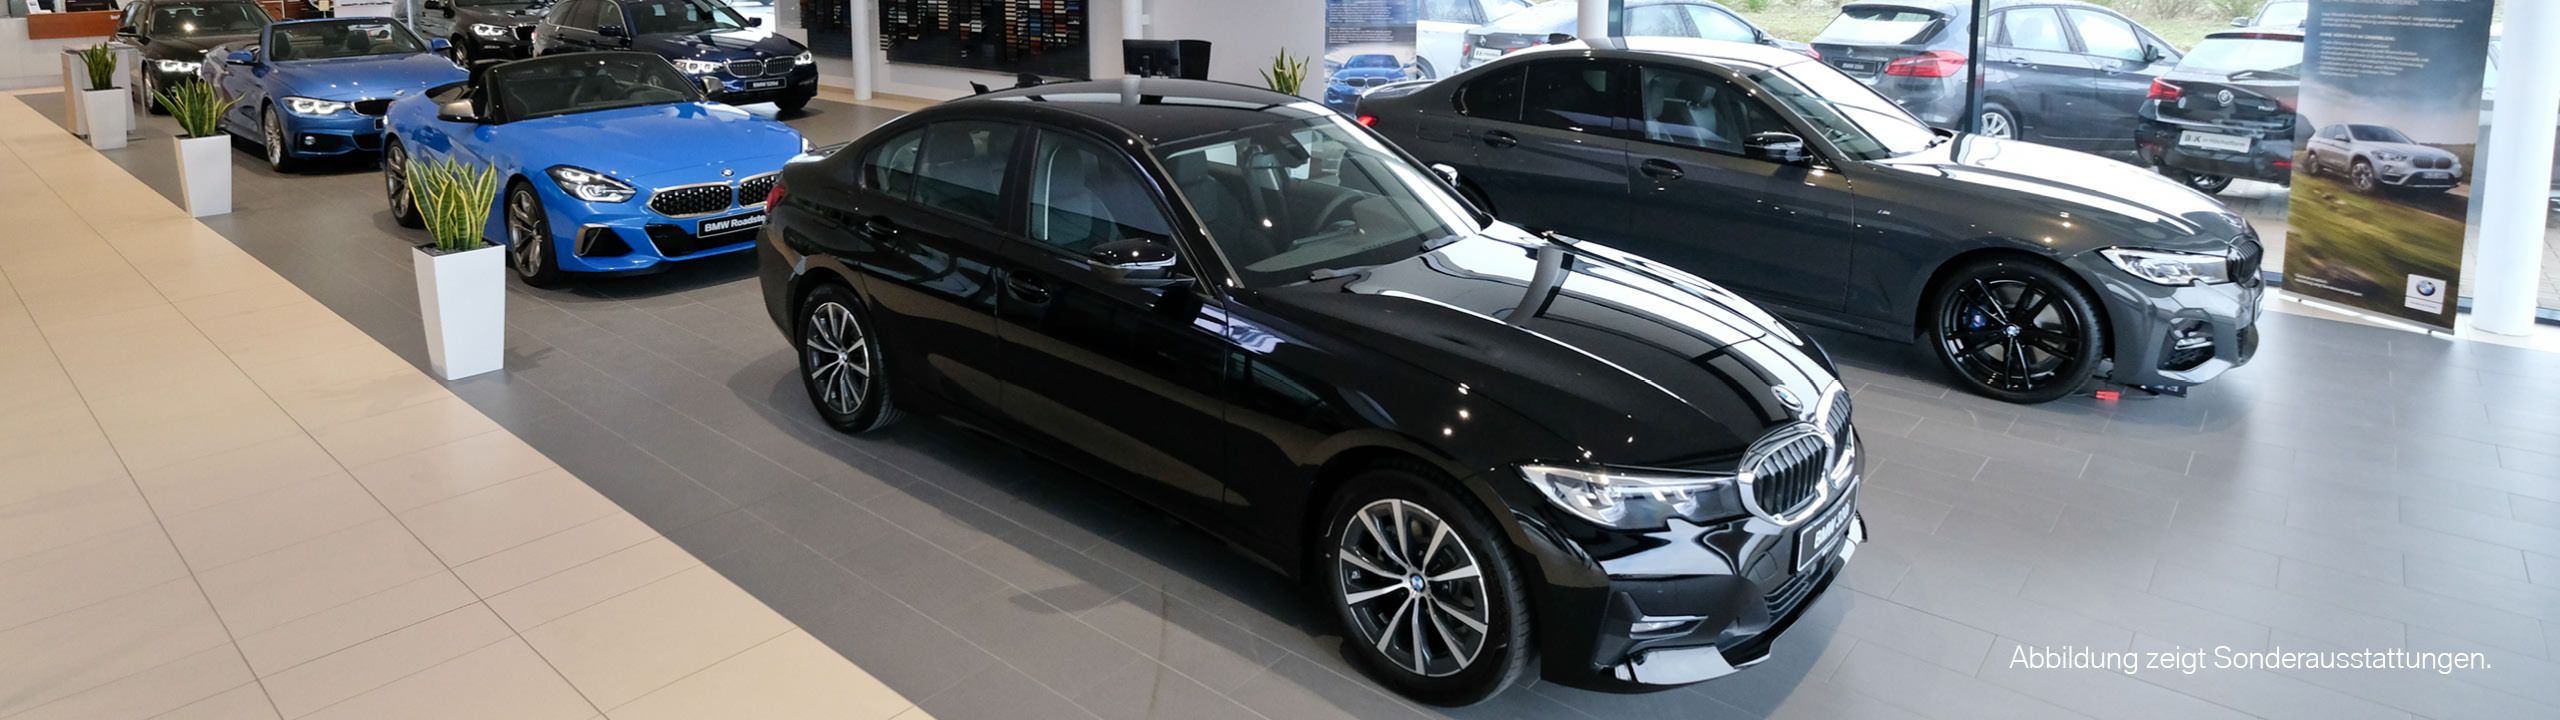 Verschiedene BMW-Modelle in Verkaufshalle von B&K Autohaus